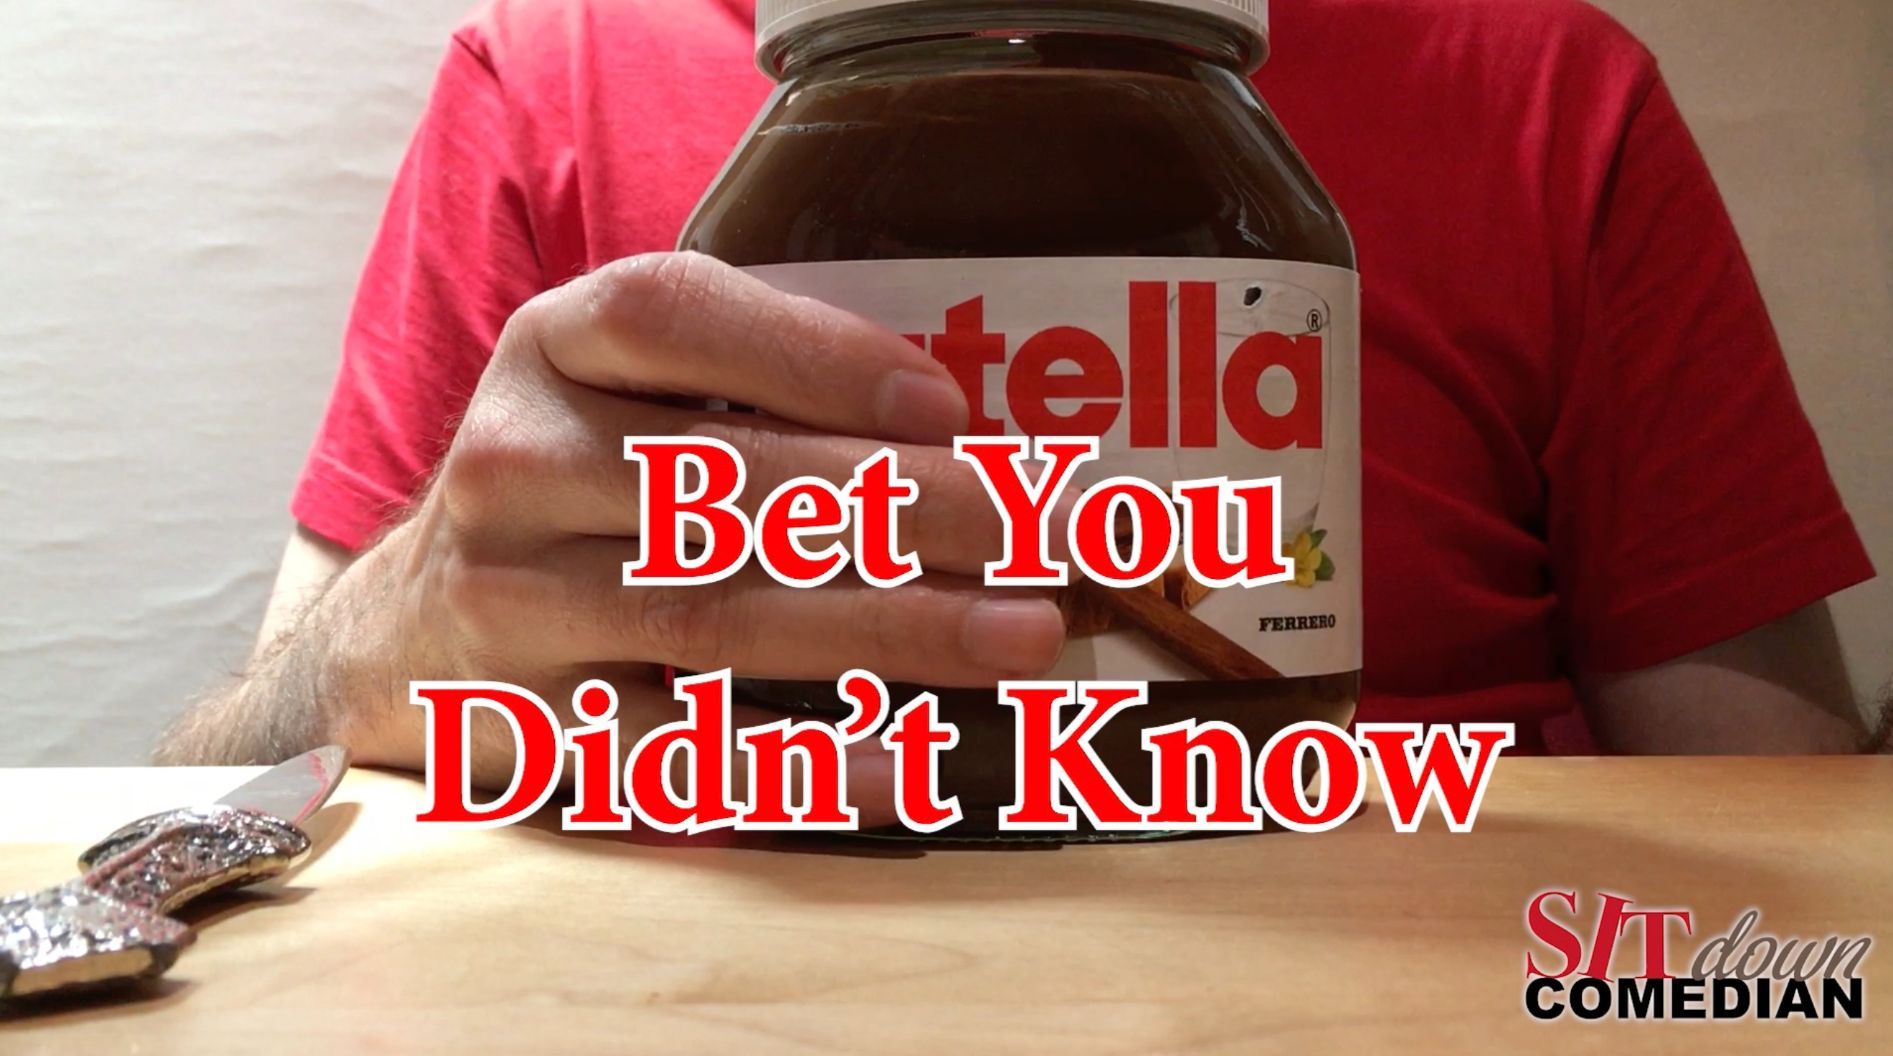 Video vom Sit down Comedina, zu sehen ein Glas von …tella in der Hand, Aufschrift auf Video: Bet You Didn’t Know